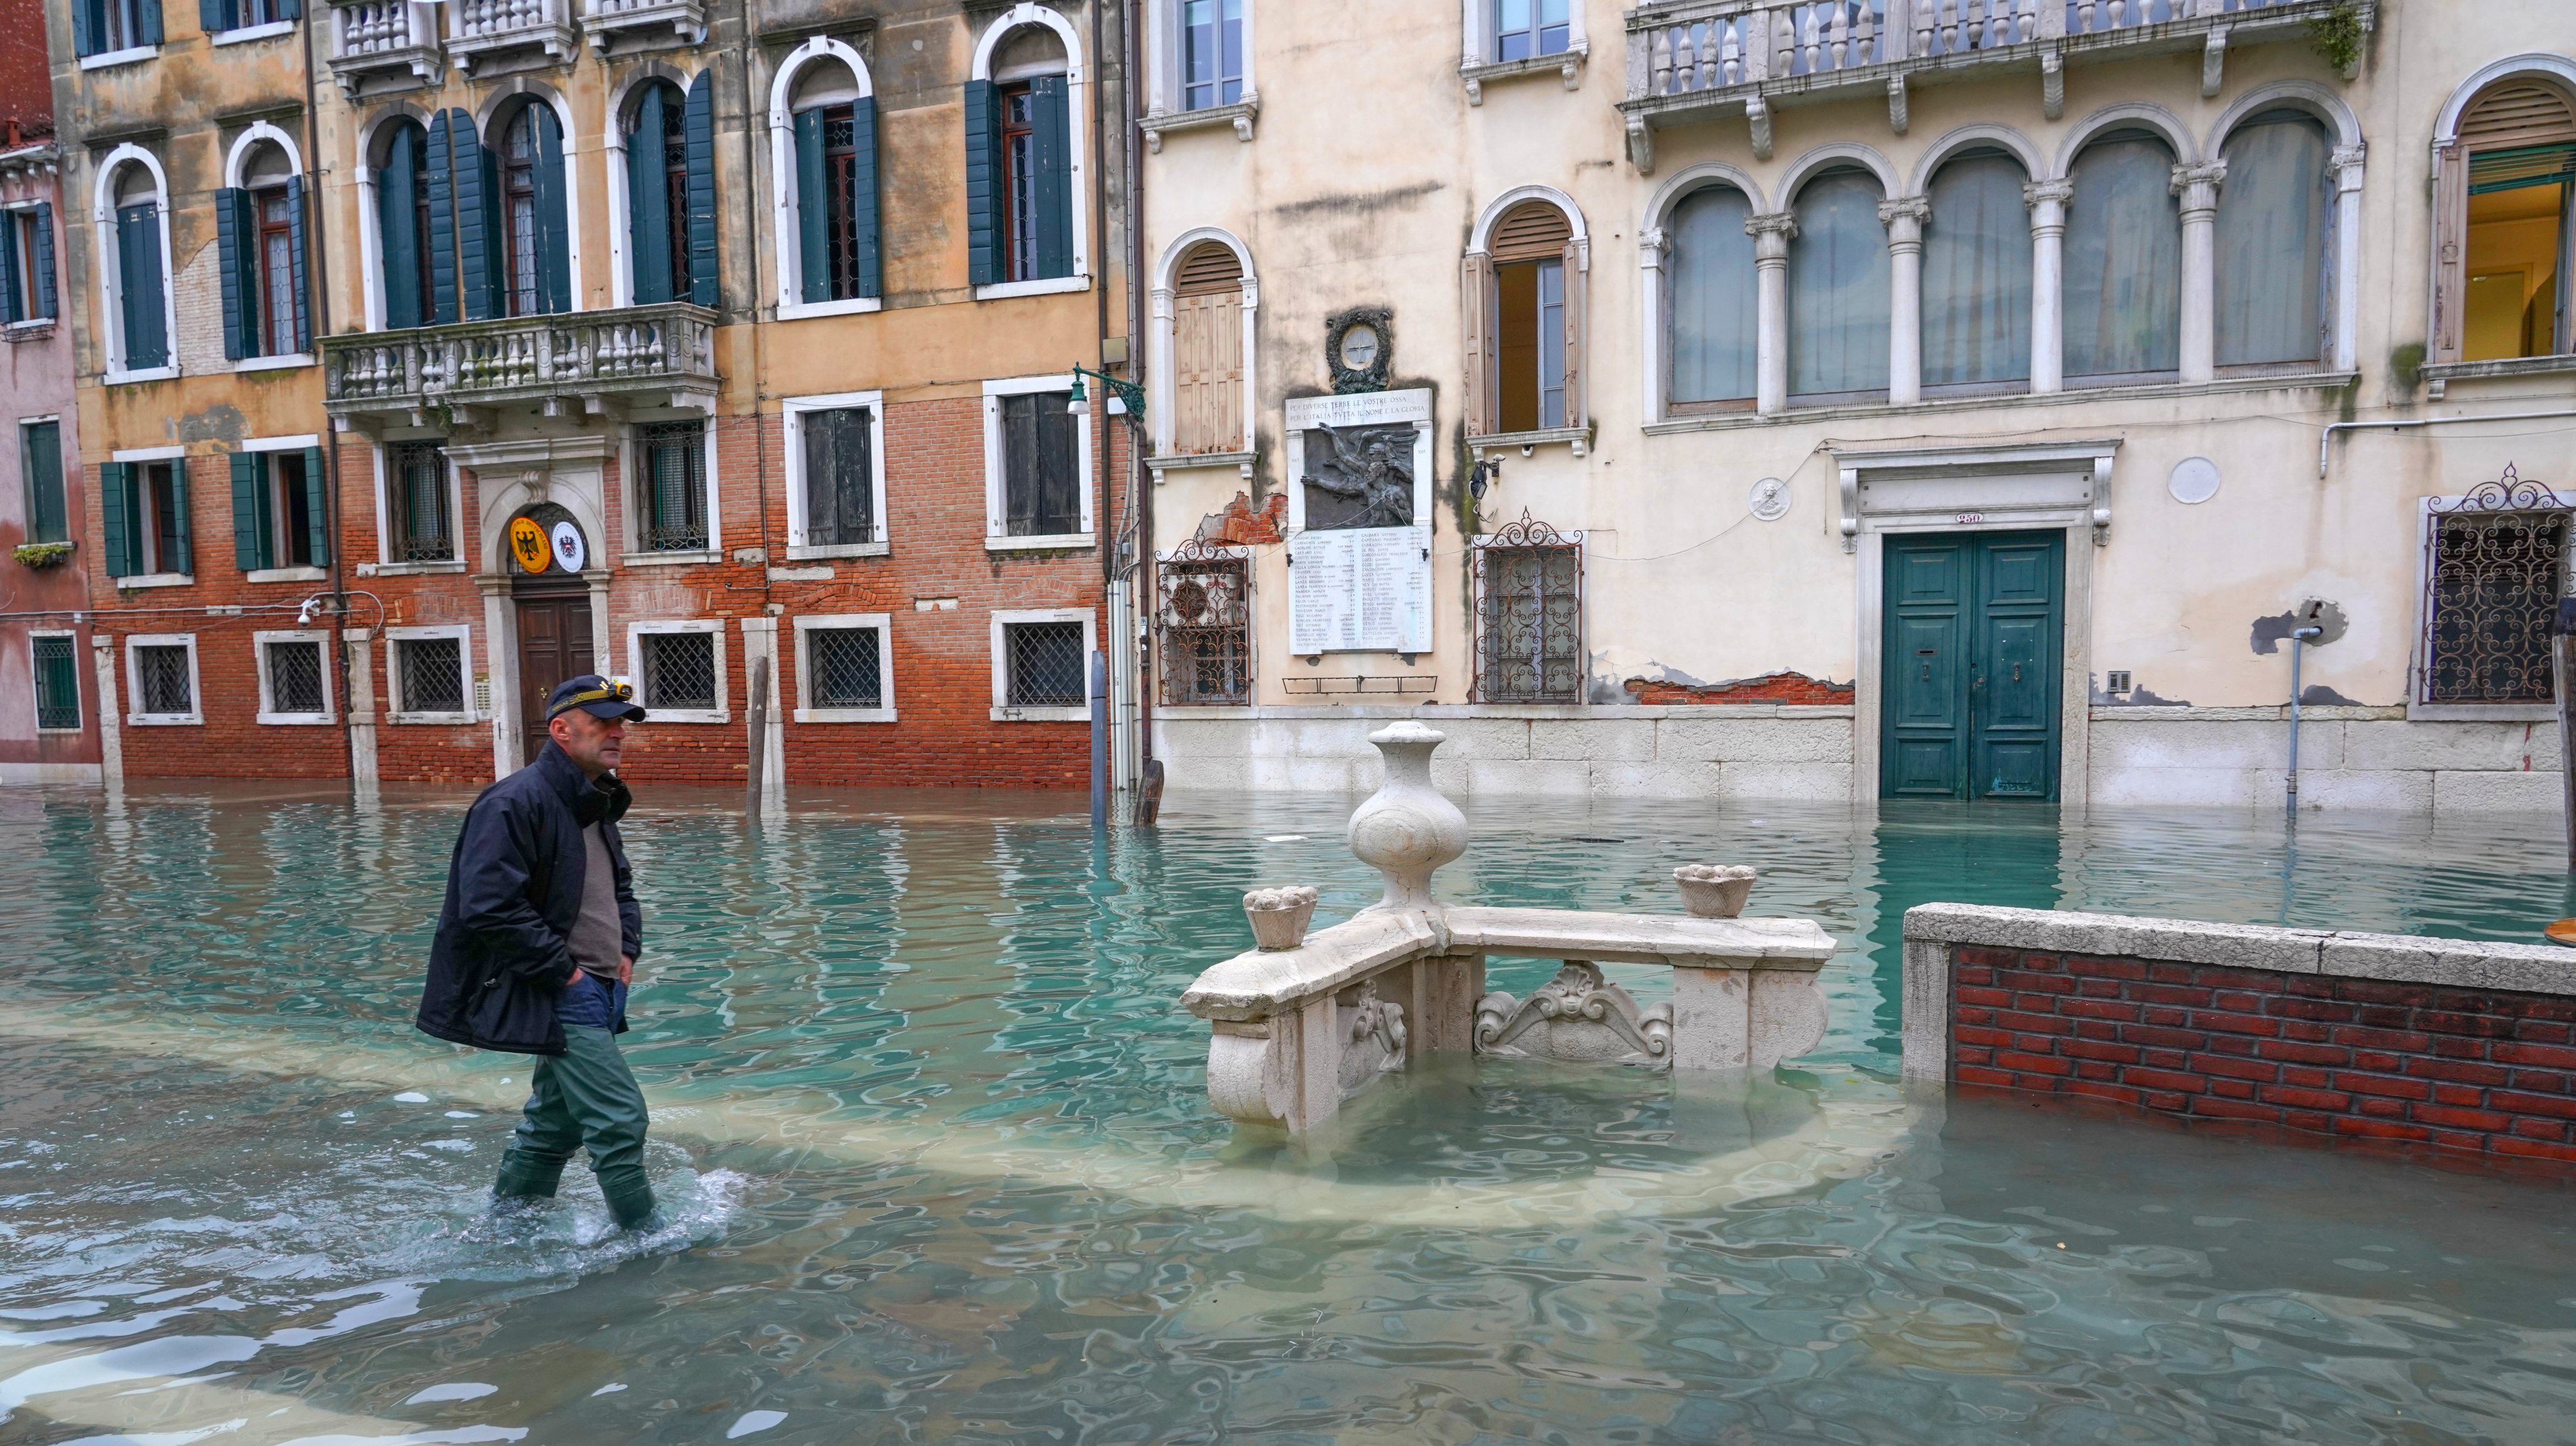 Fondamenta dei Tolentini during the high tide in Venice. november. Venice. Italy. Europe